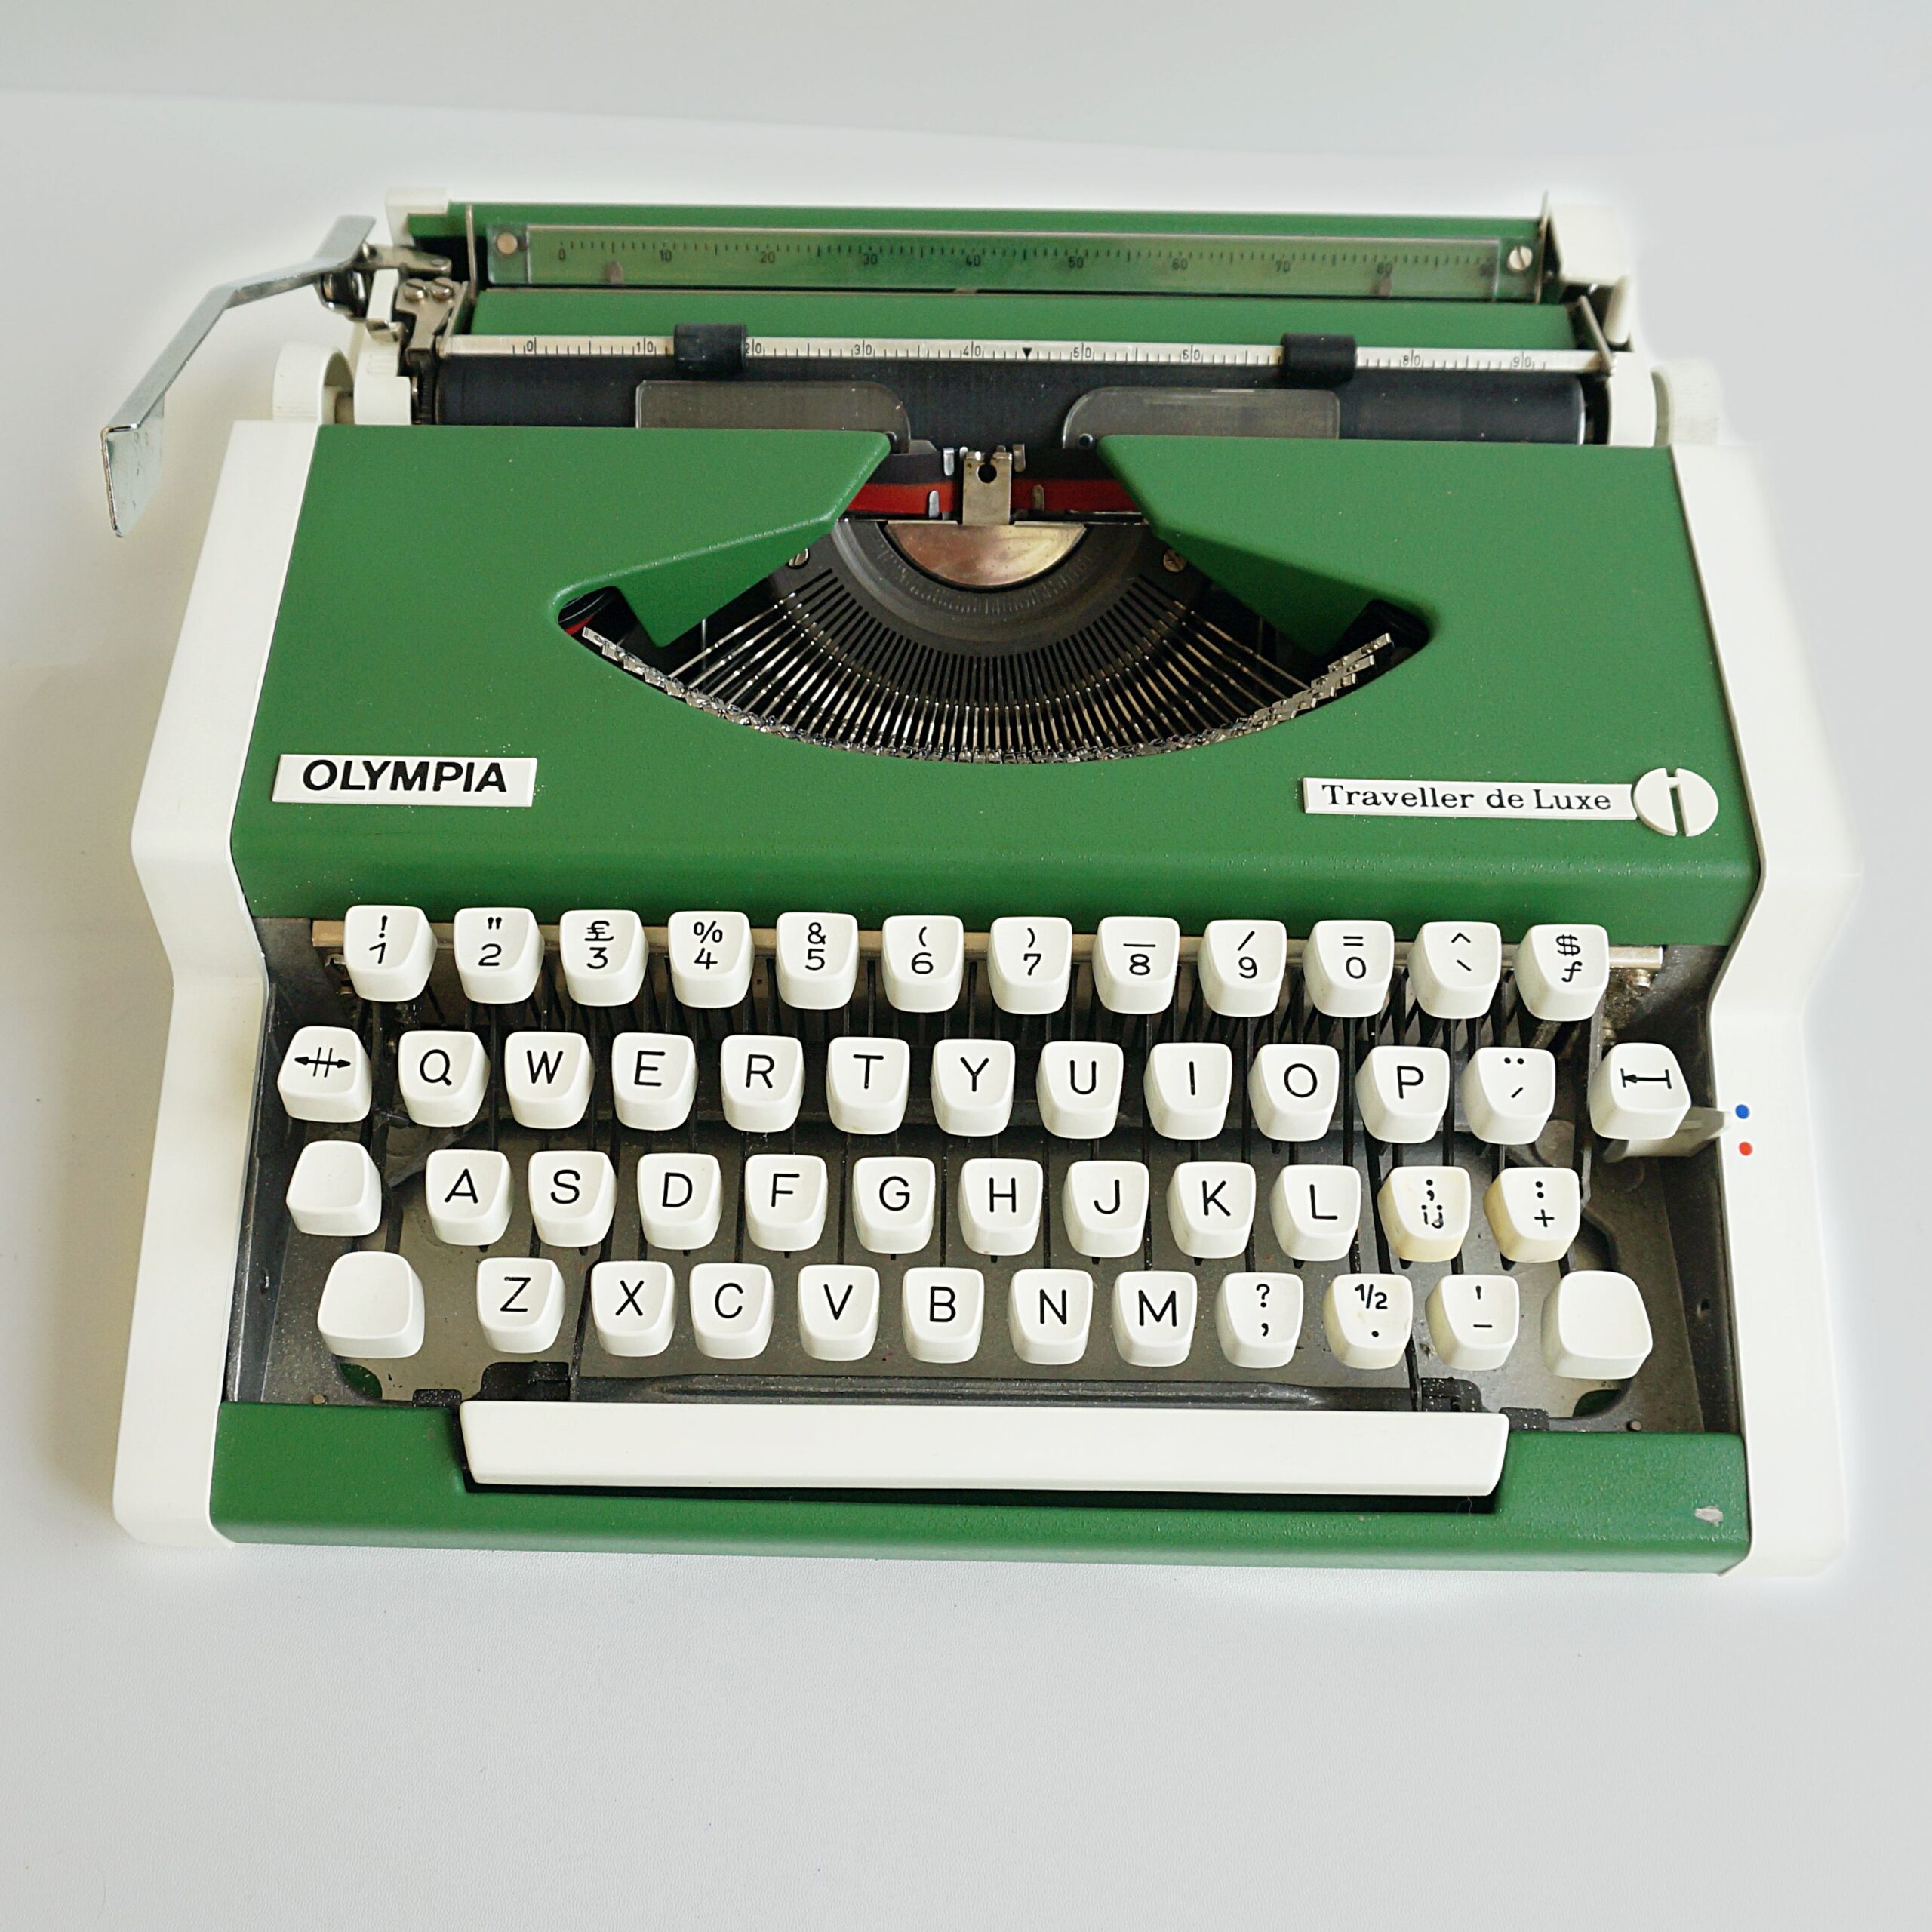 olympia traveller de luxe s typewriter